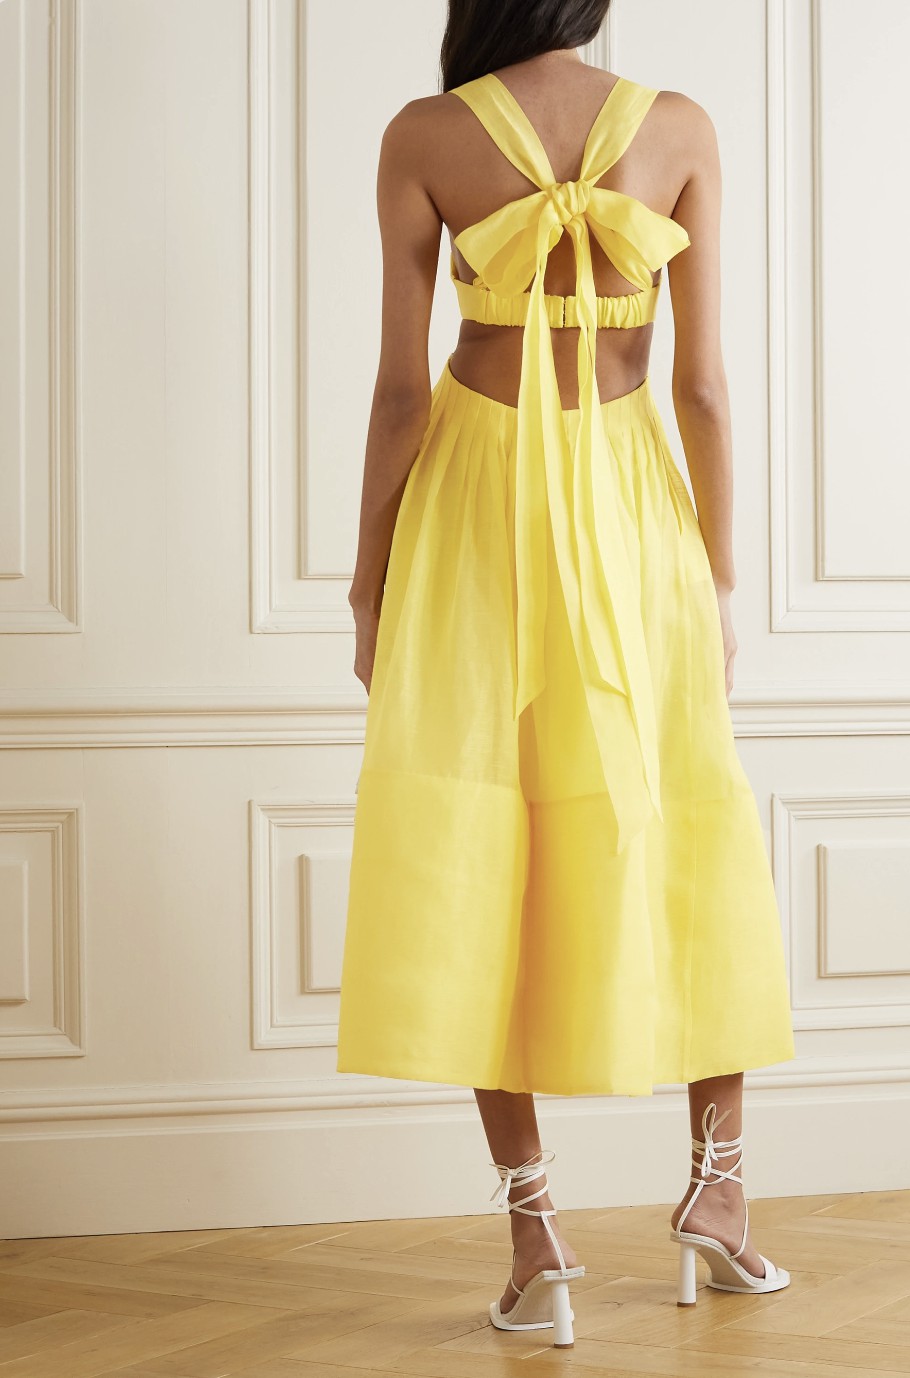 Zimmermann Sunshine Botanica Bralette Gown [Brand New] New Wedding Dress  Save 49% - Stillwhite